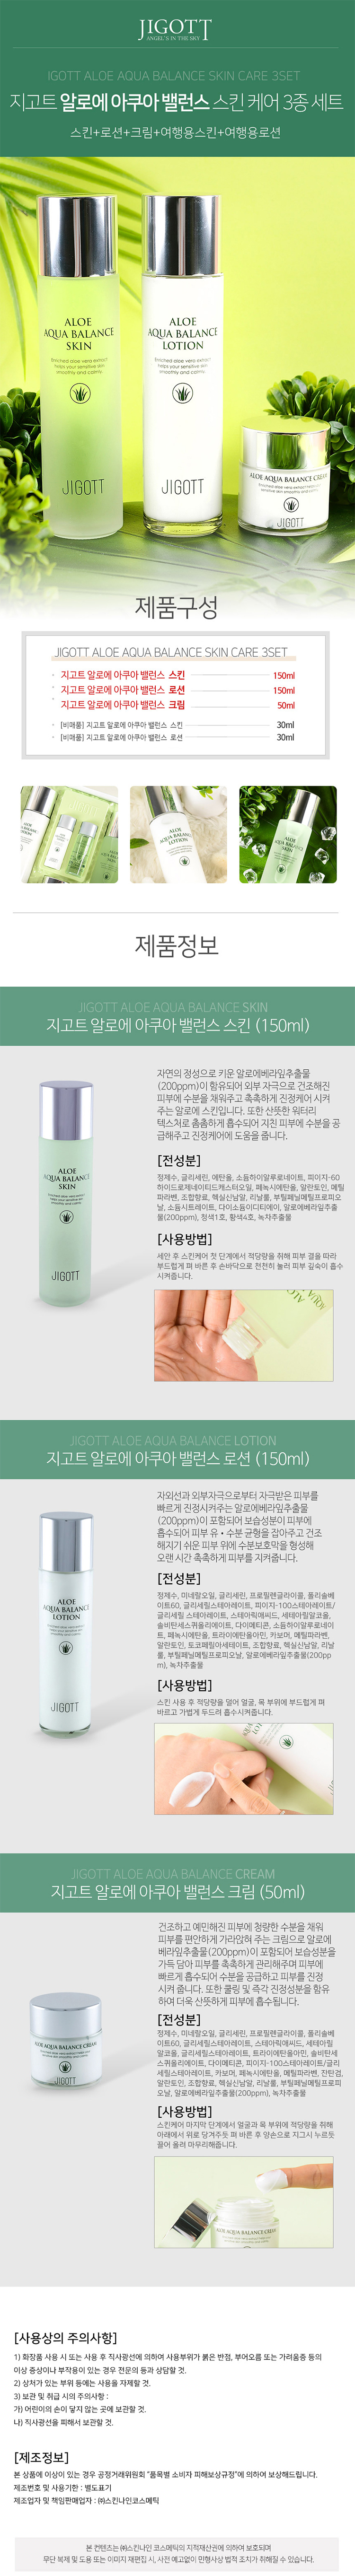 韓國 臉部保養 化妝水 臉部保養 臉部保養 乳液